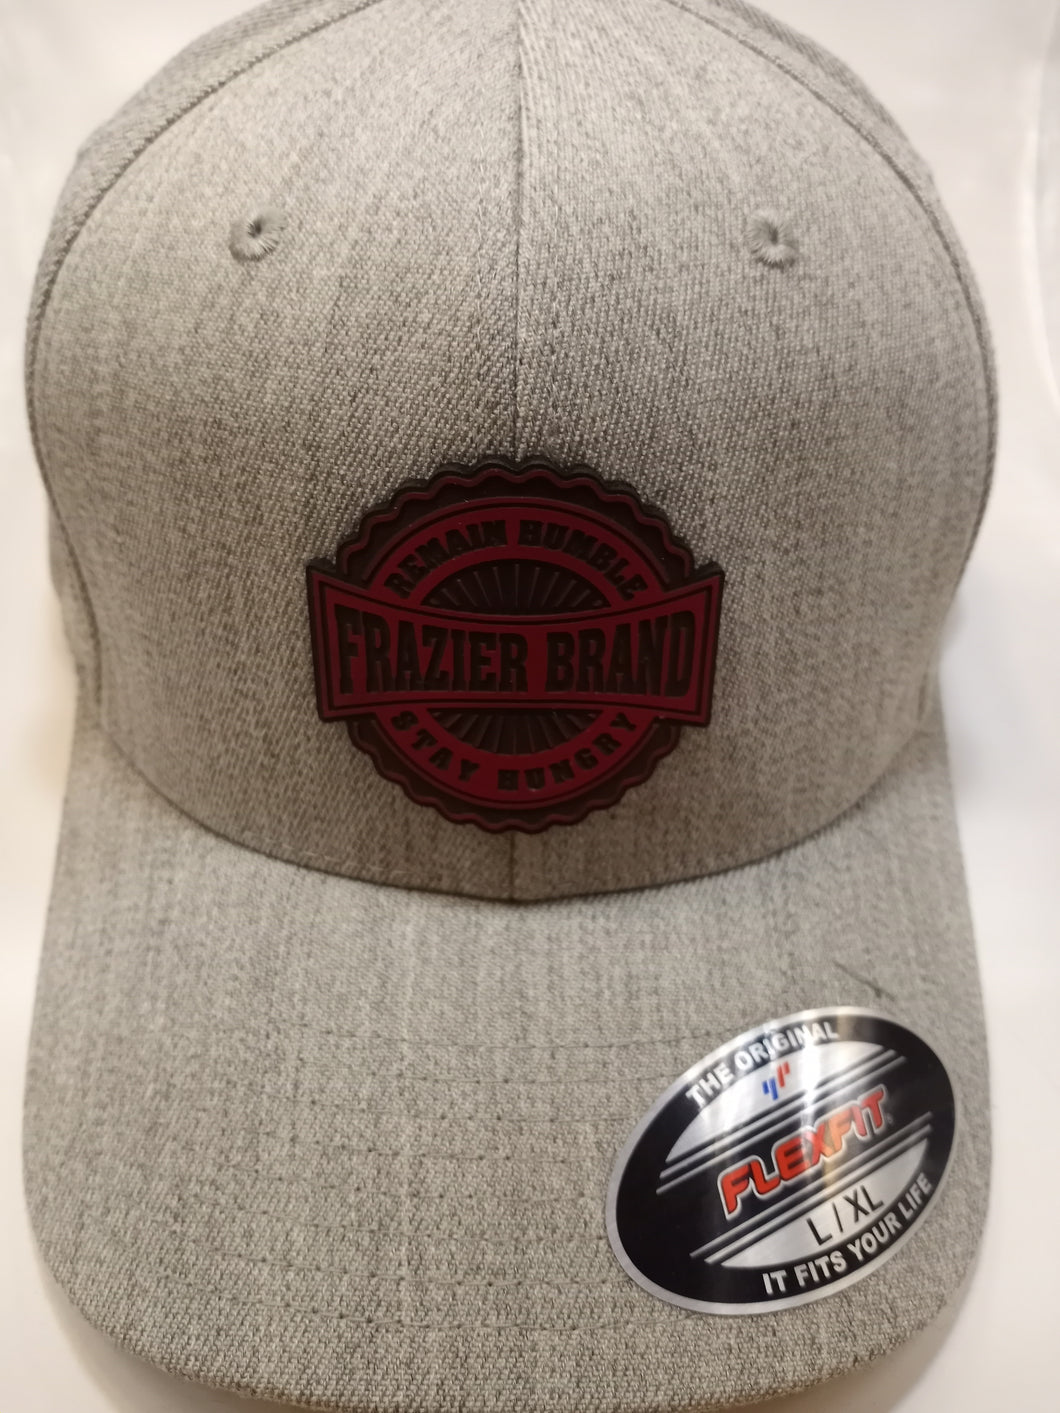 Frazier Brand Flex Fit Heather Gray Hat